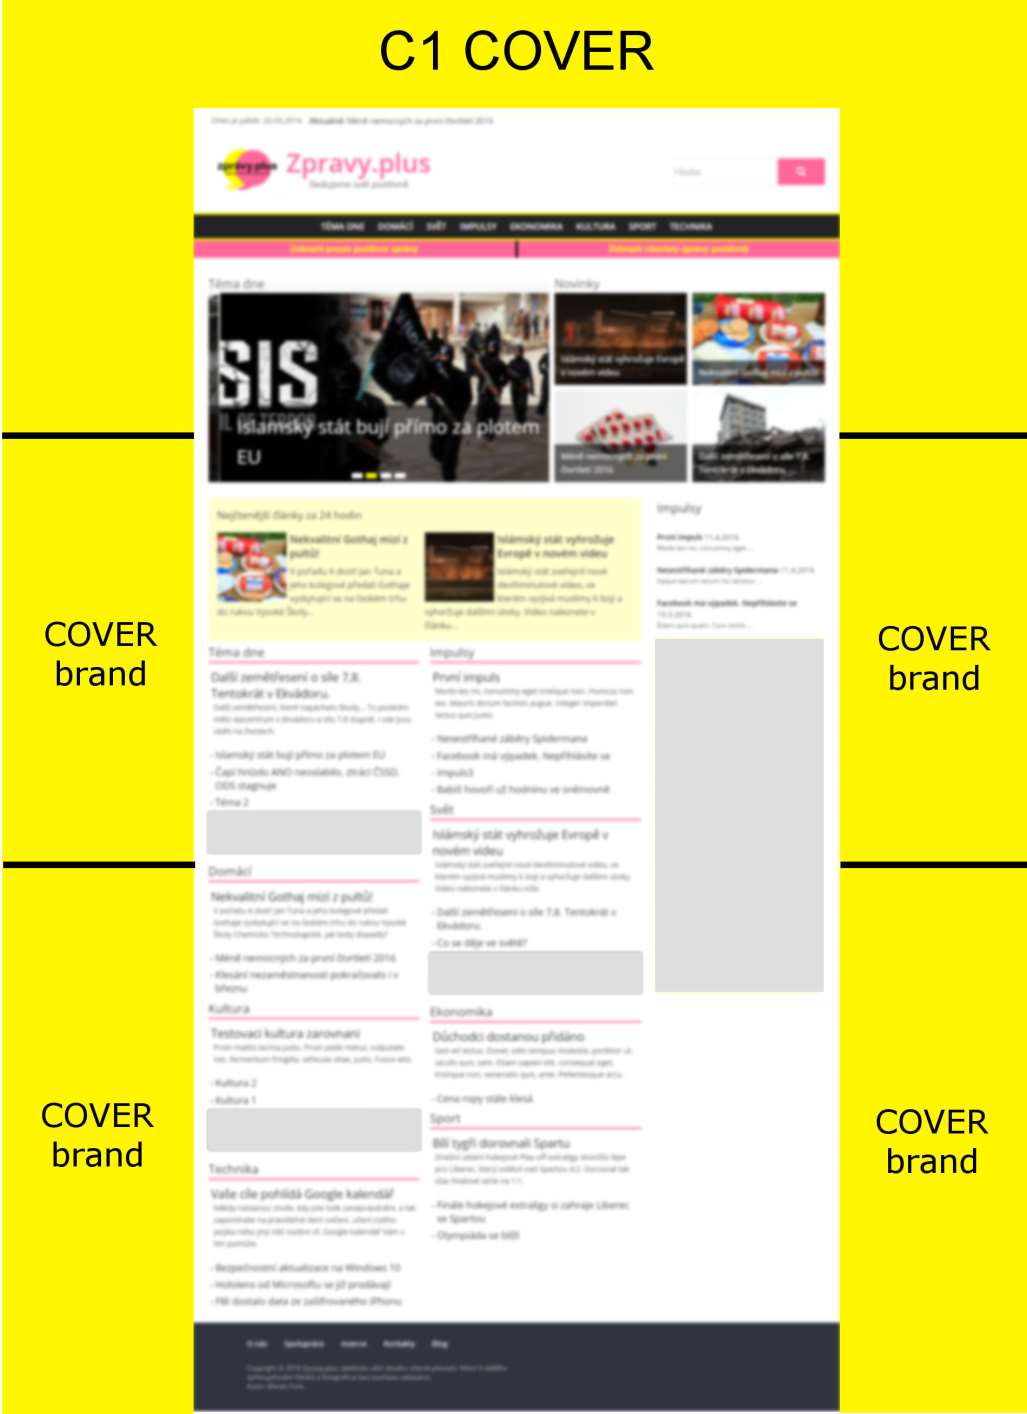 C1 COVER Informace: Reklama jakožto pozadí, proto je tedy 0 nutné, aby byla pokryta celá reklamní 0 plocha.